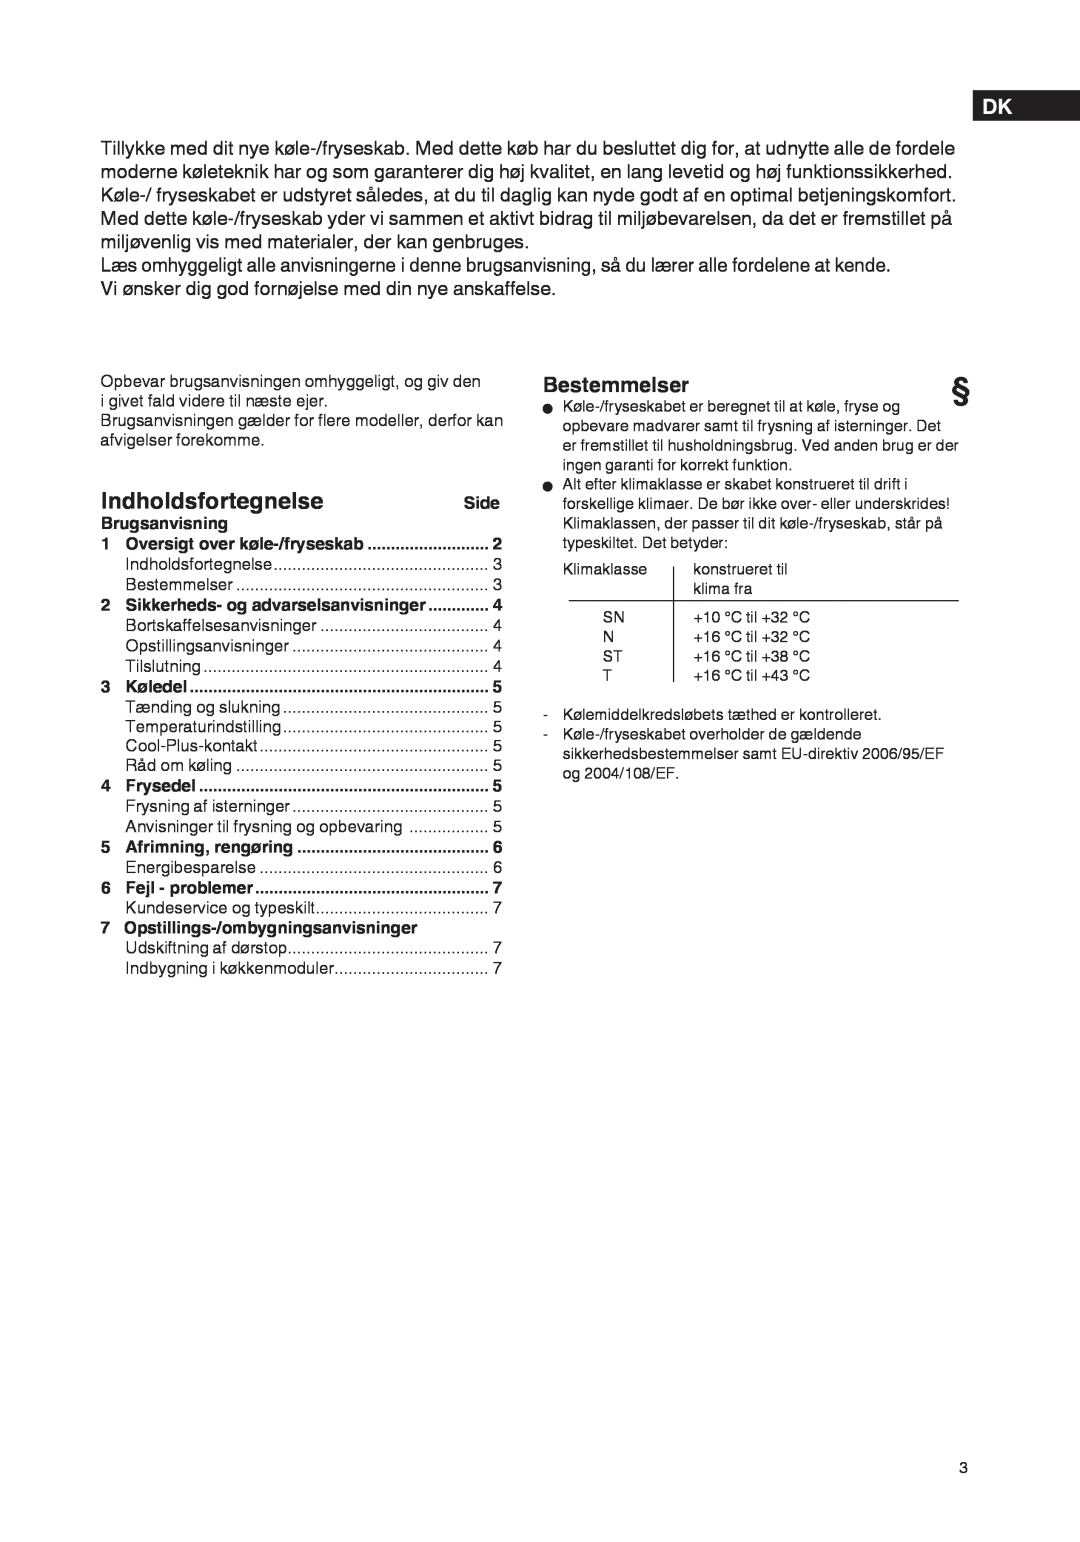 Liebherr 7061 929-01 manual Indholdsfortegnelse, Bestemmelser 